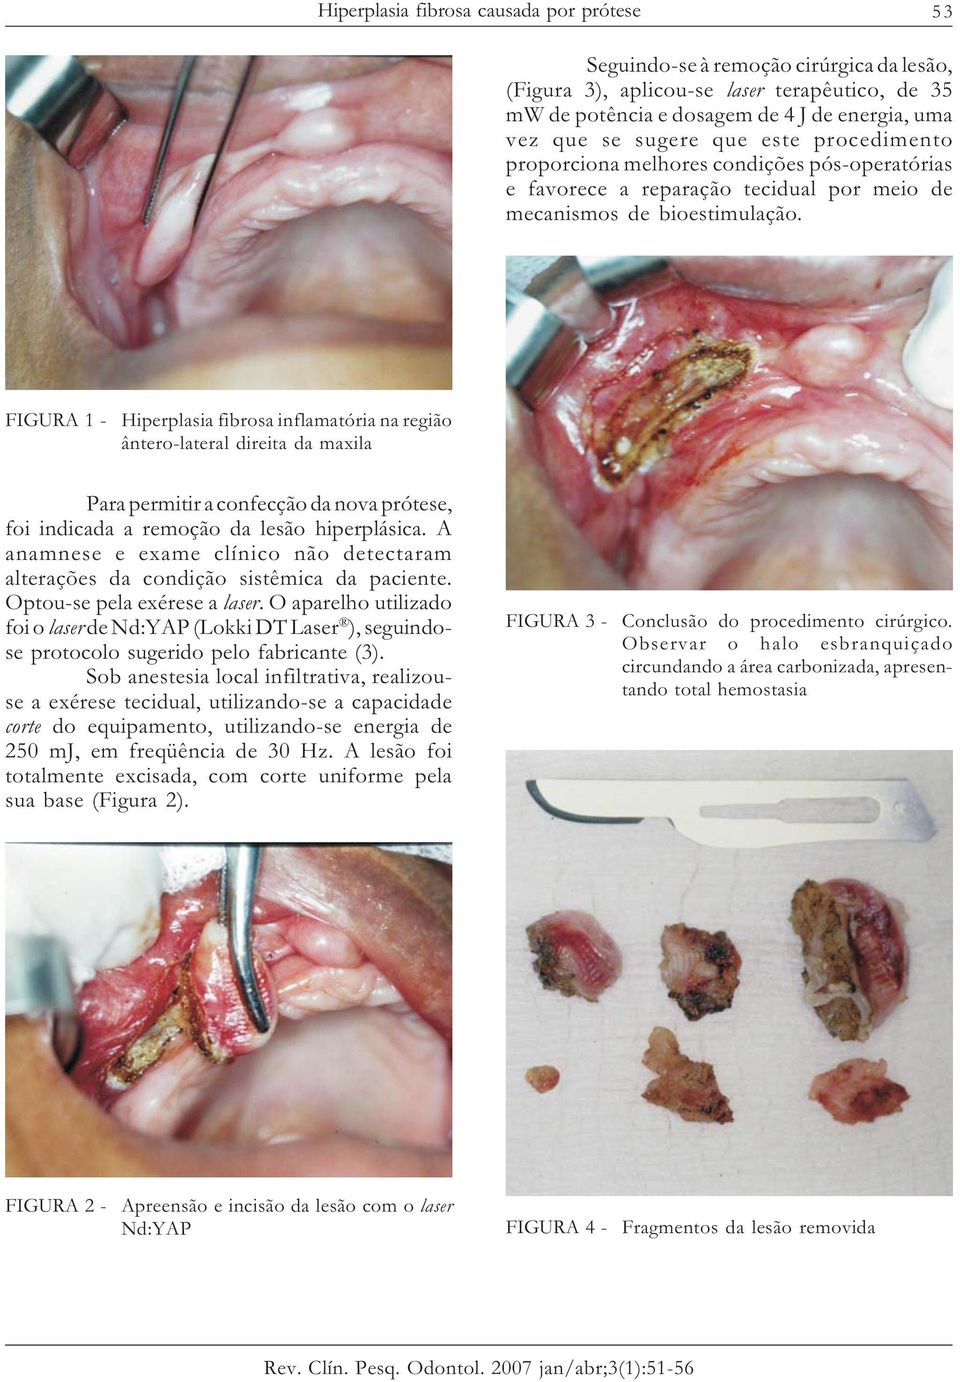 FIGURA 1 - Hiperplasia fibrosa inflamatória na região ântero-lateral direita da maxila Para permitir a confecção da nova prótese, foi indicada a remoção da lesão hiperplásica.